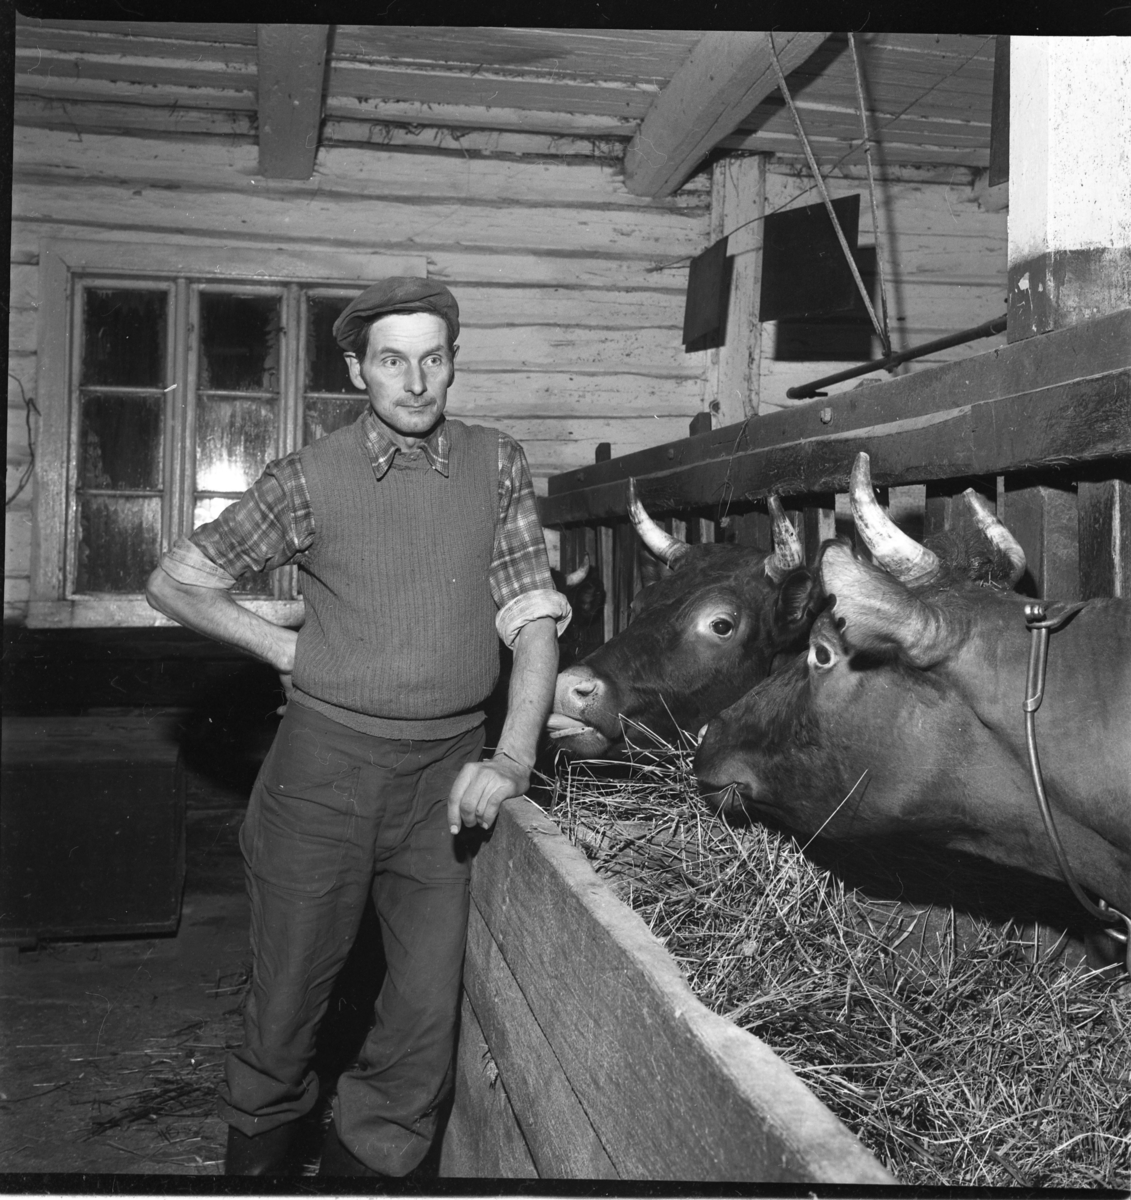 En man med keps står vid kor i en ladugård.